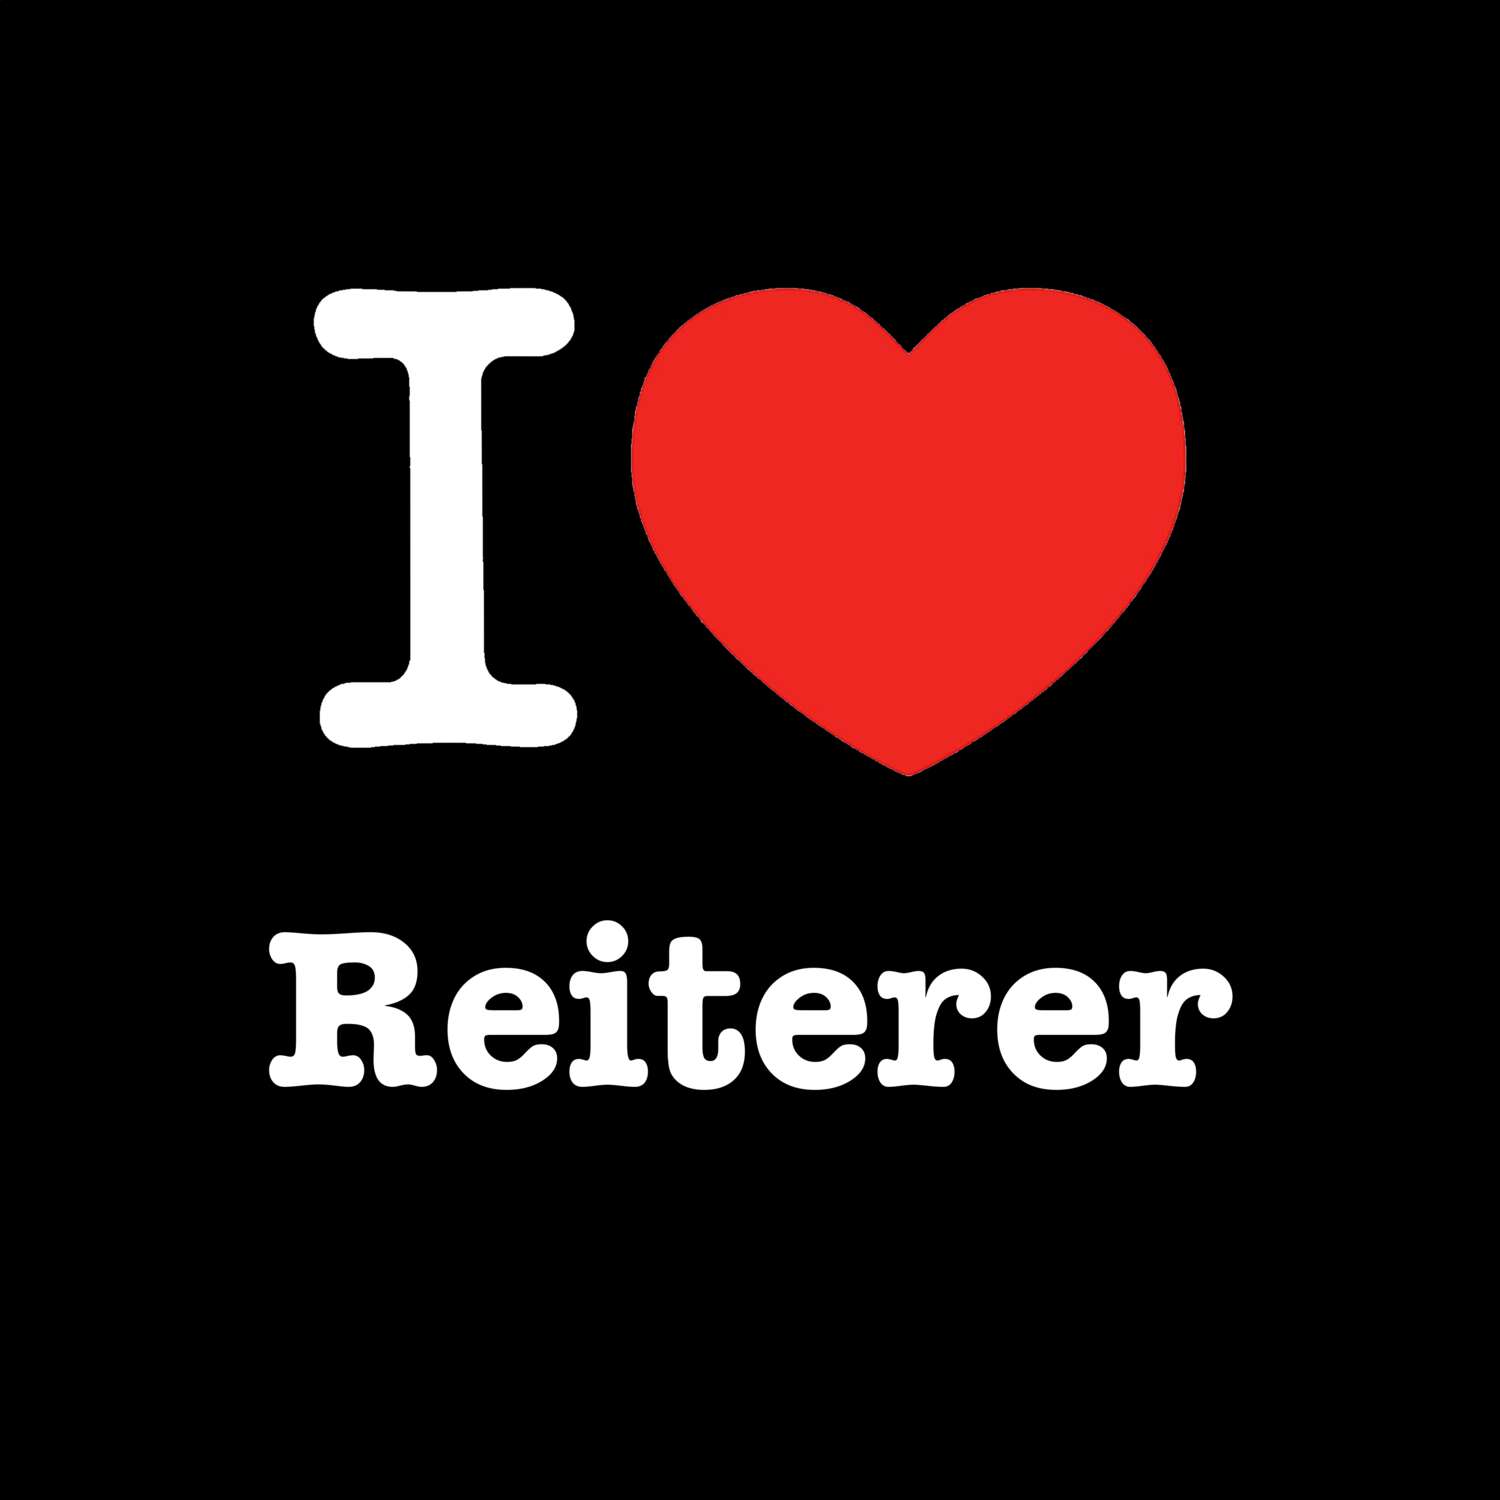 Reiterer T-Shirt »I love«